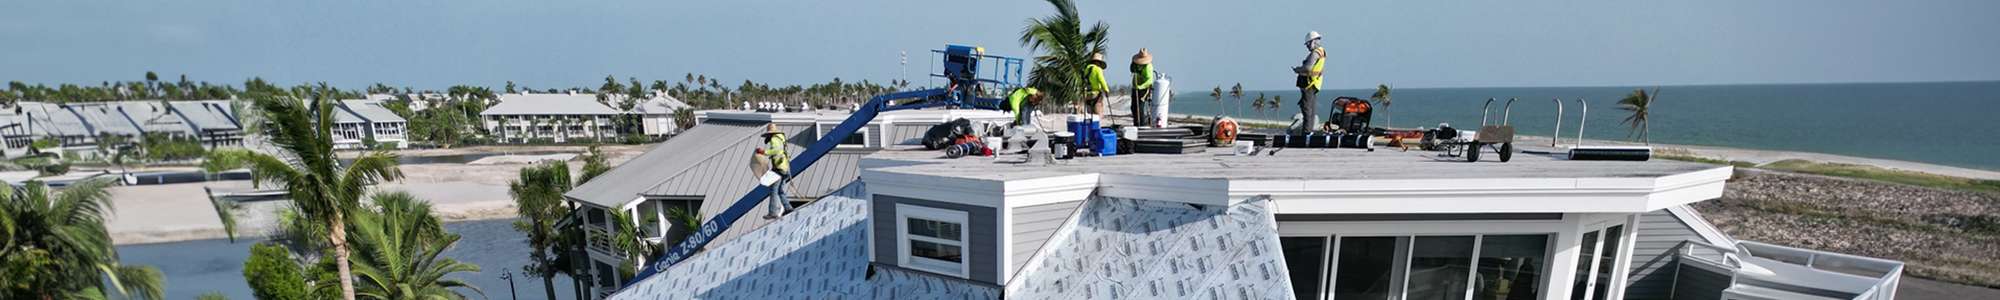 GDS_Roofing-Contractor-24_HEADER.jpg